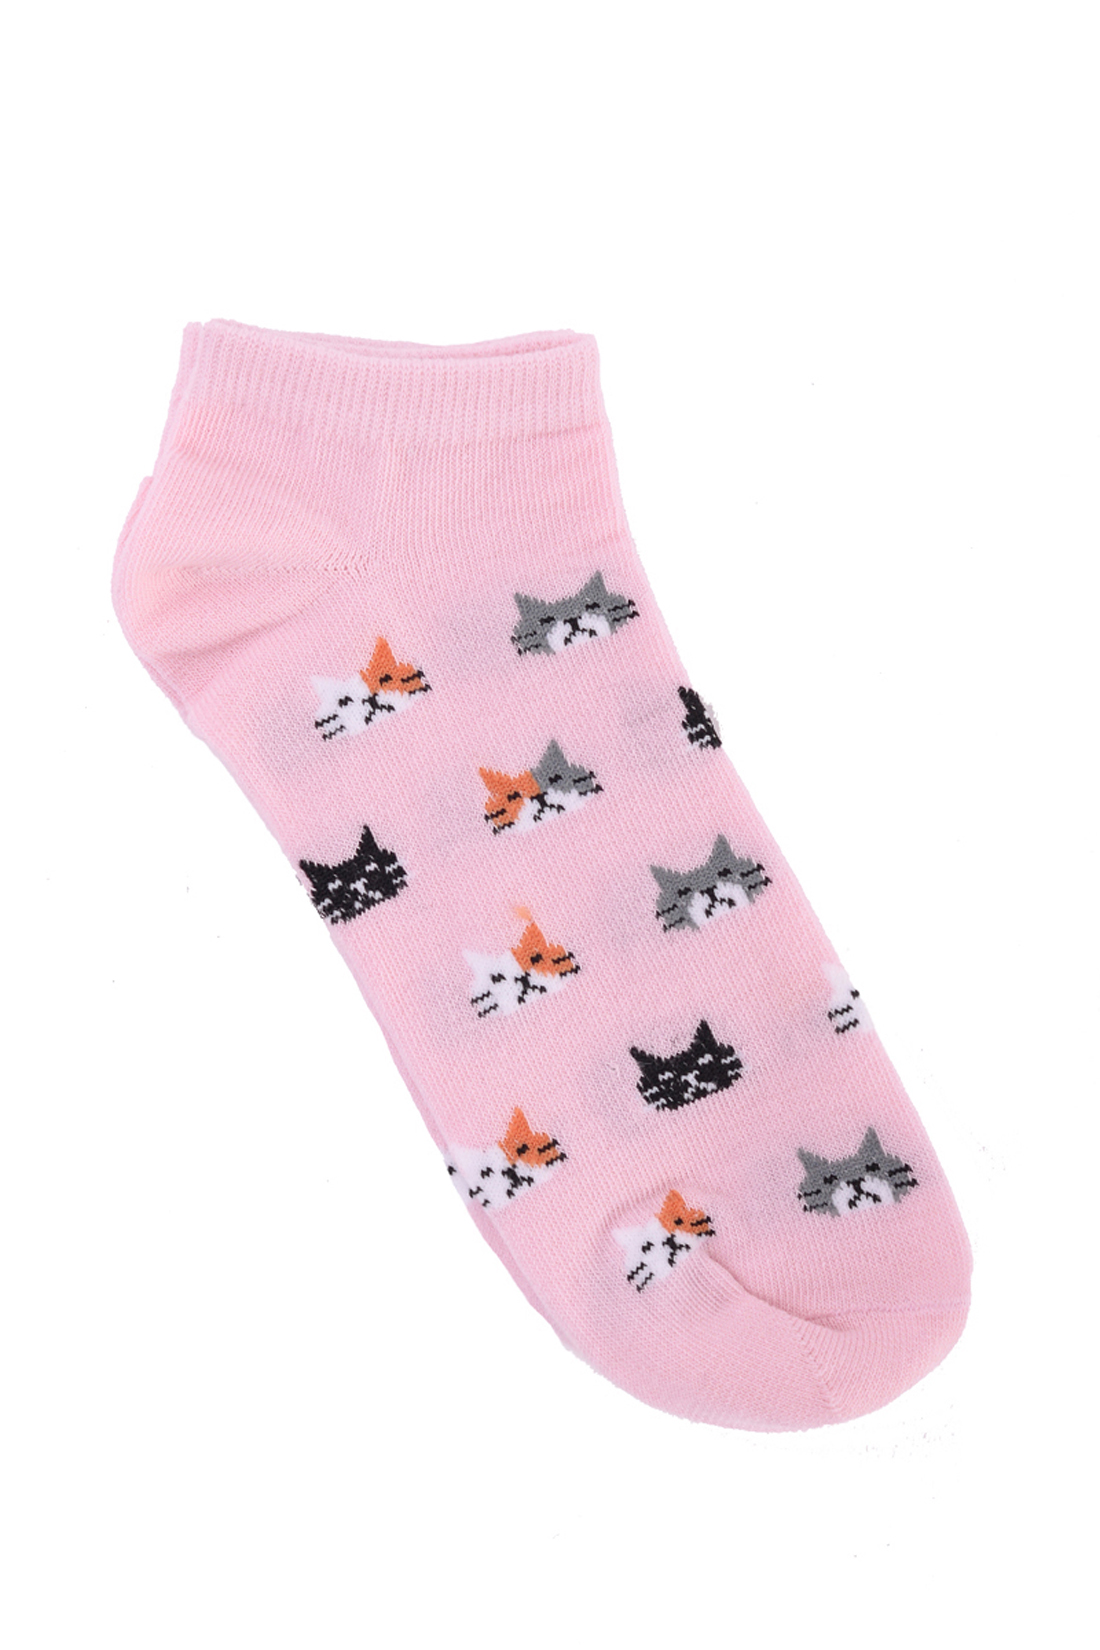 Носки с котиками (арт. baon B399017), размер 35/37, цвет розовый